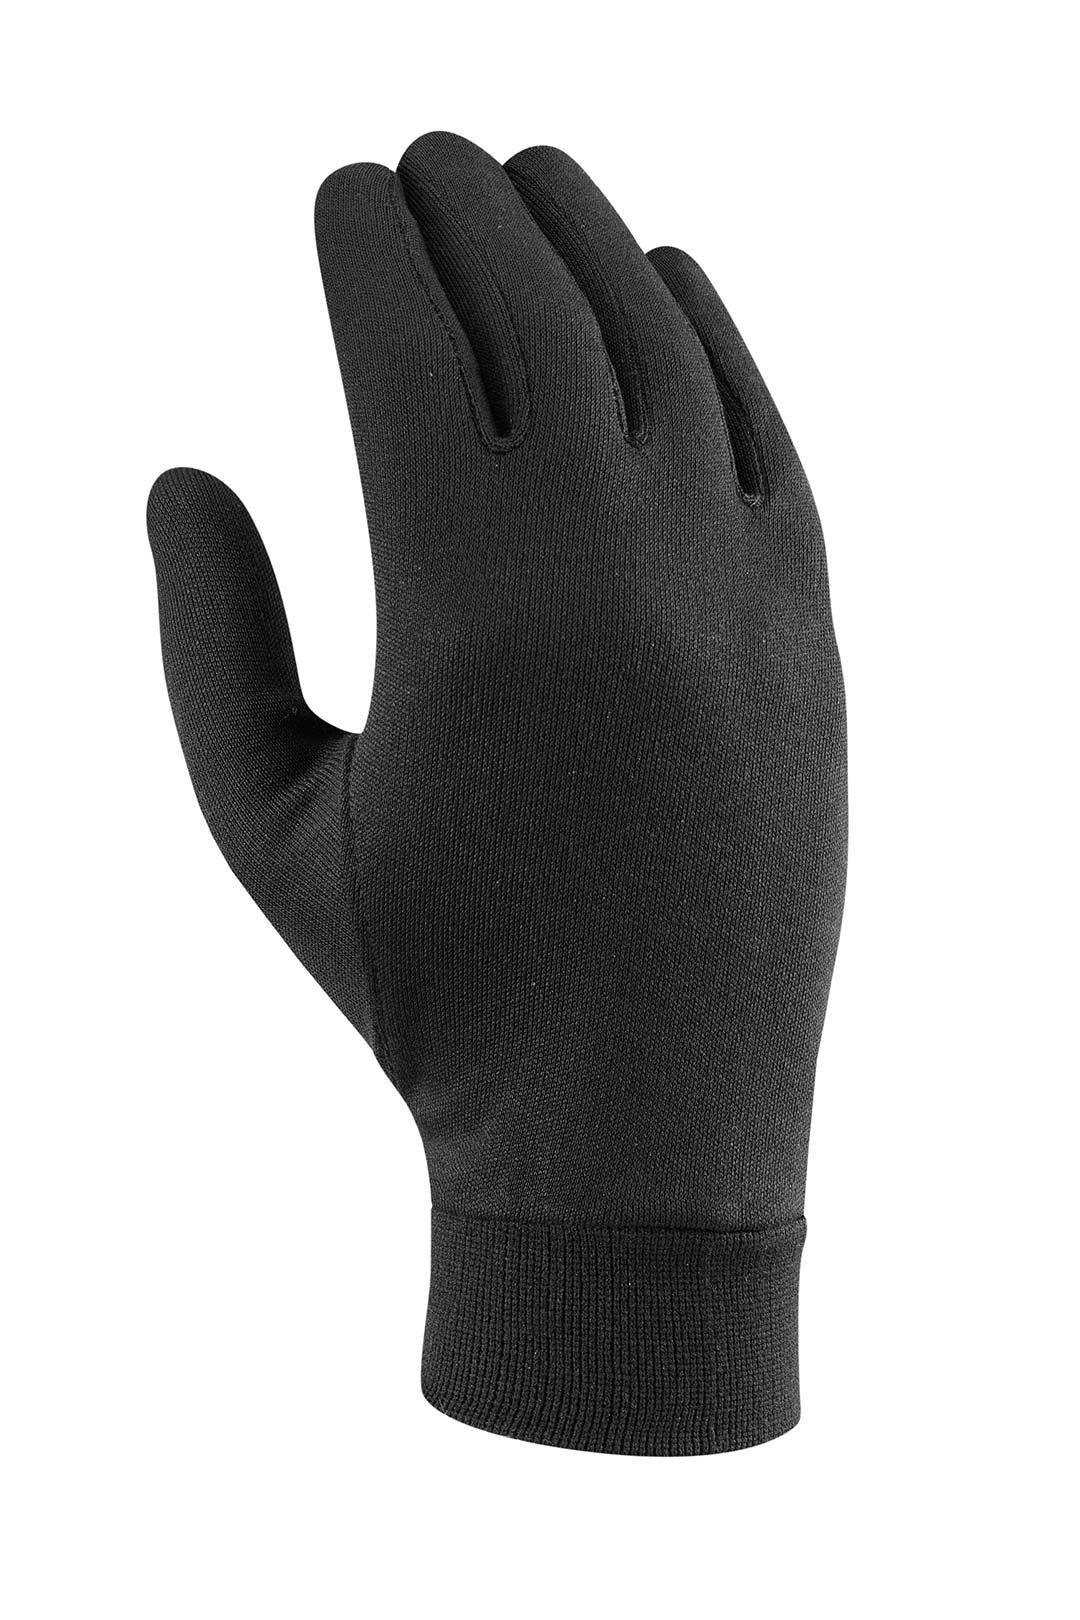 Geon Glove